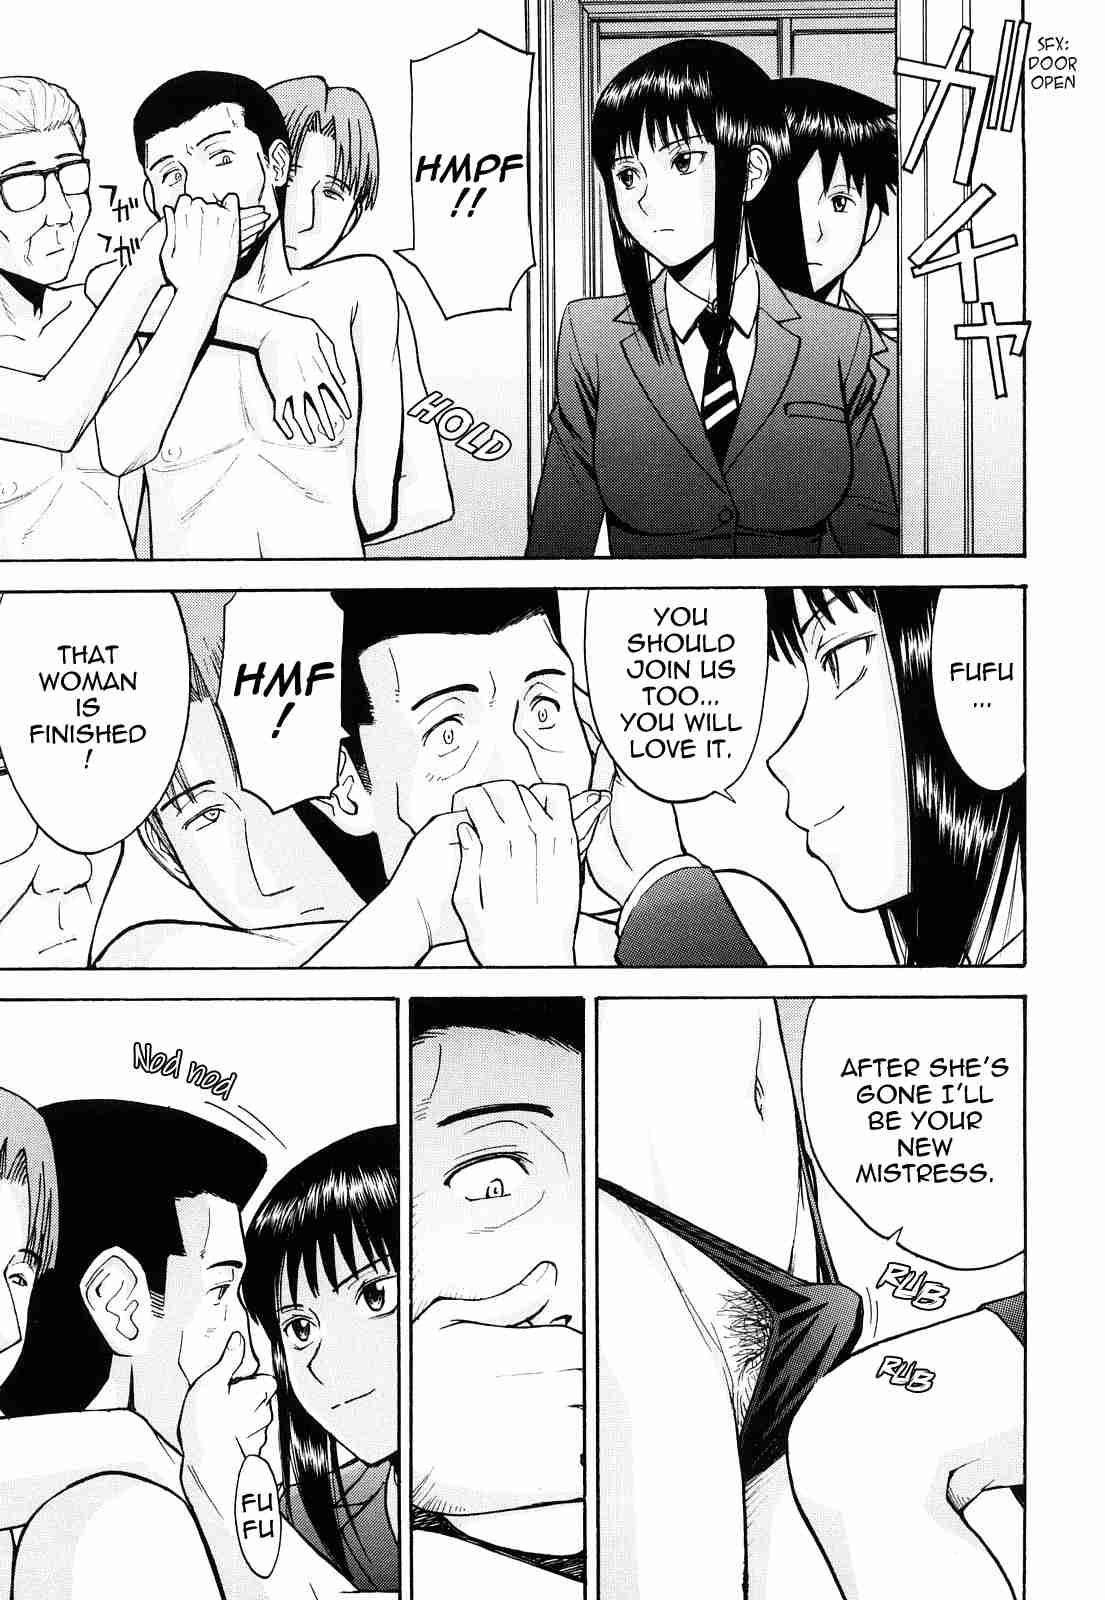 Reading Sex Education Original Hentai By Inomaru 1 Sex Education [end] Page 122 Hentai